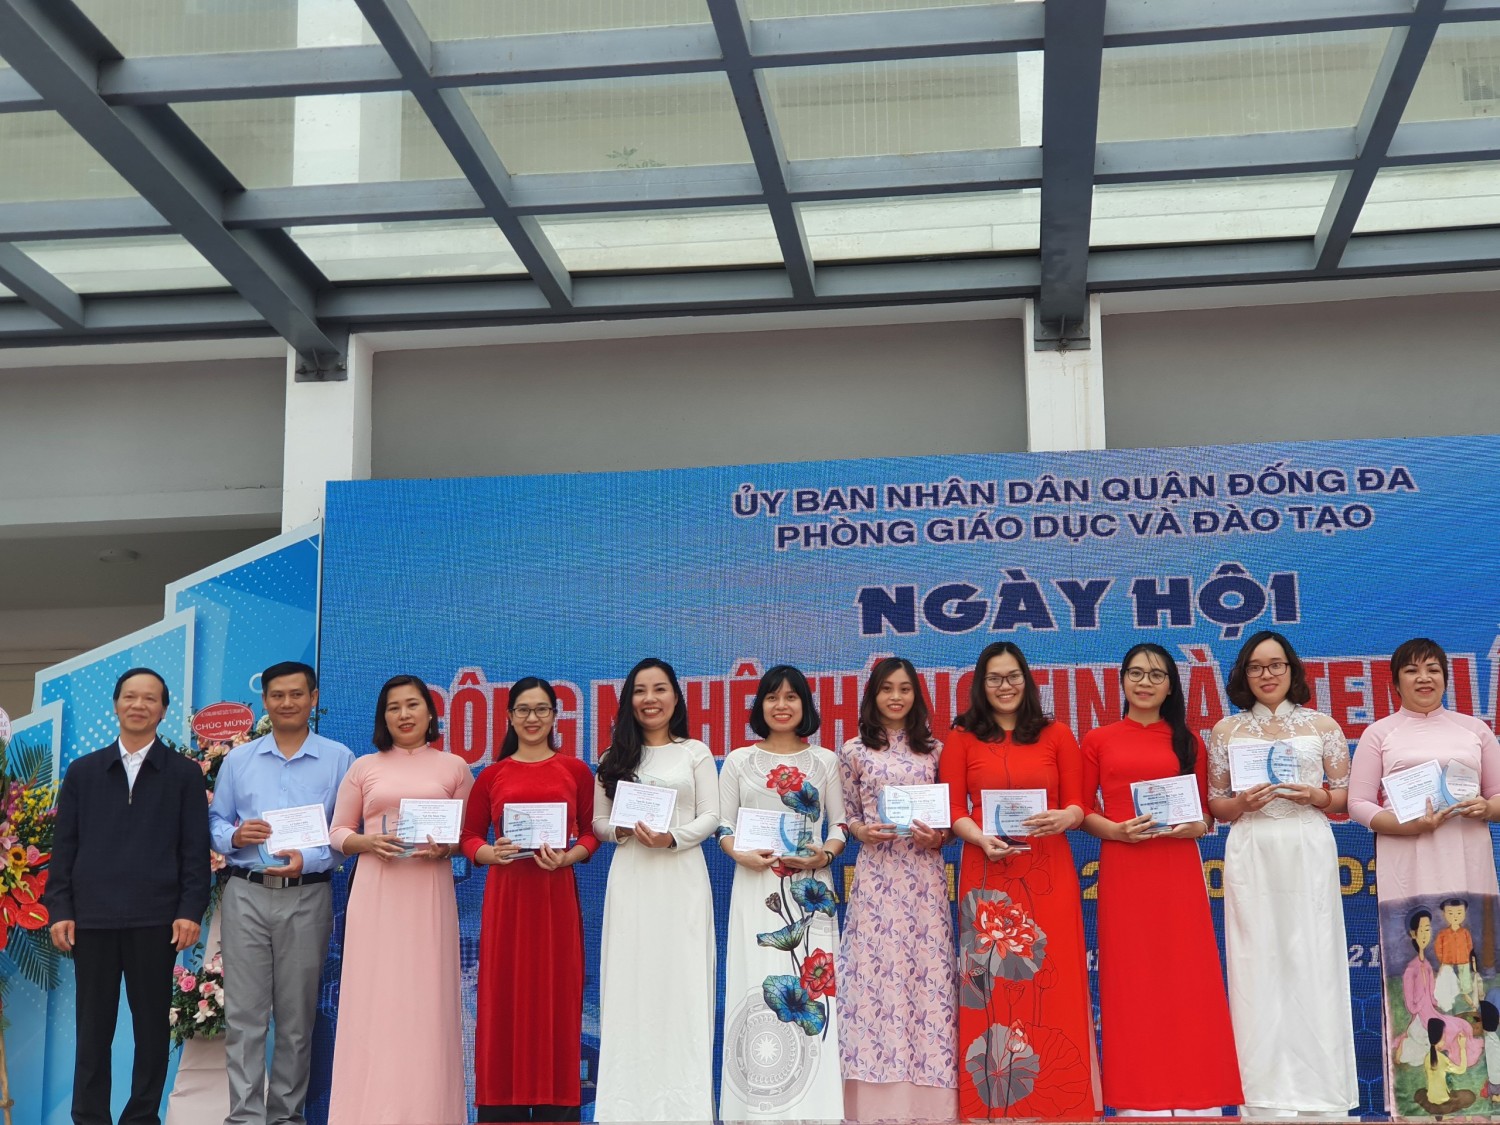 Chúc mừng Cô giáo Phan Thị Thu Dung và thầy giáo Lê Xuân Chiến đã đạt giải nhất kì thi thiết kế bài giản Elearning